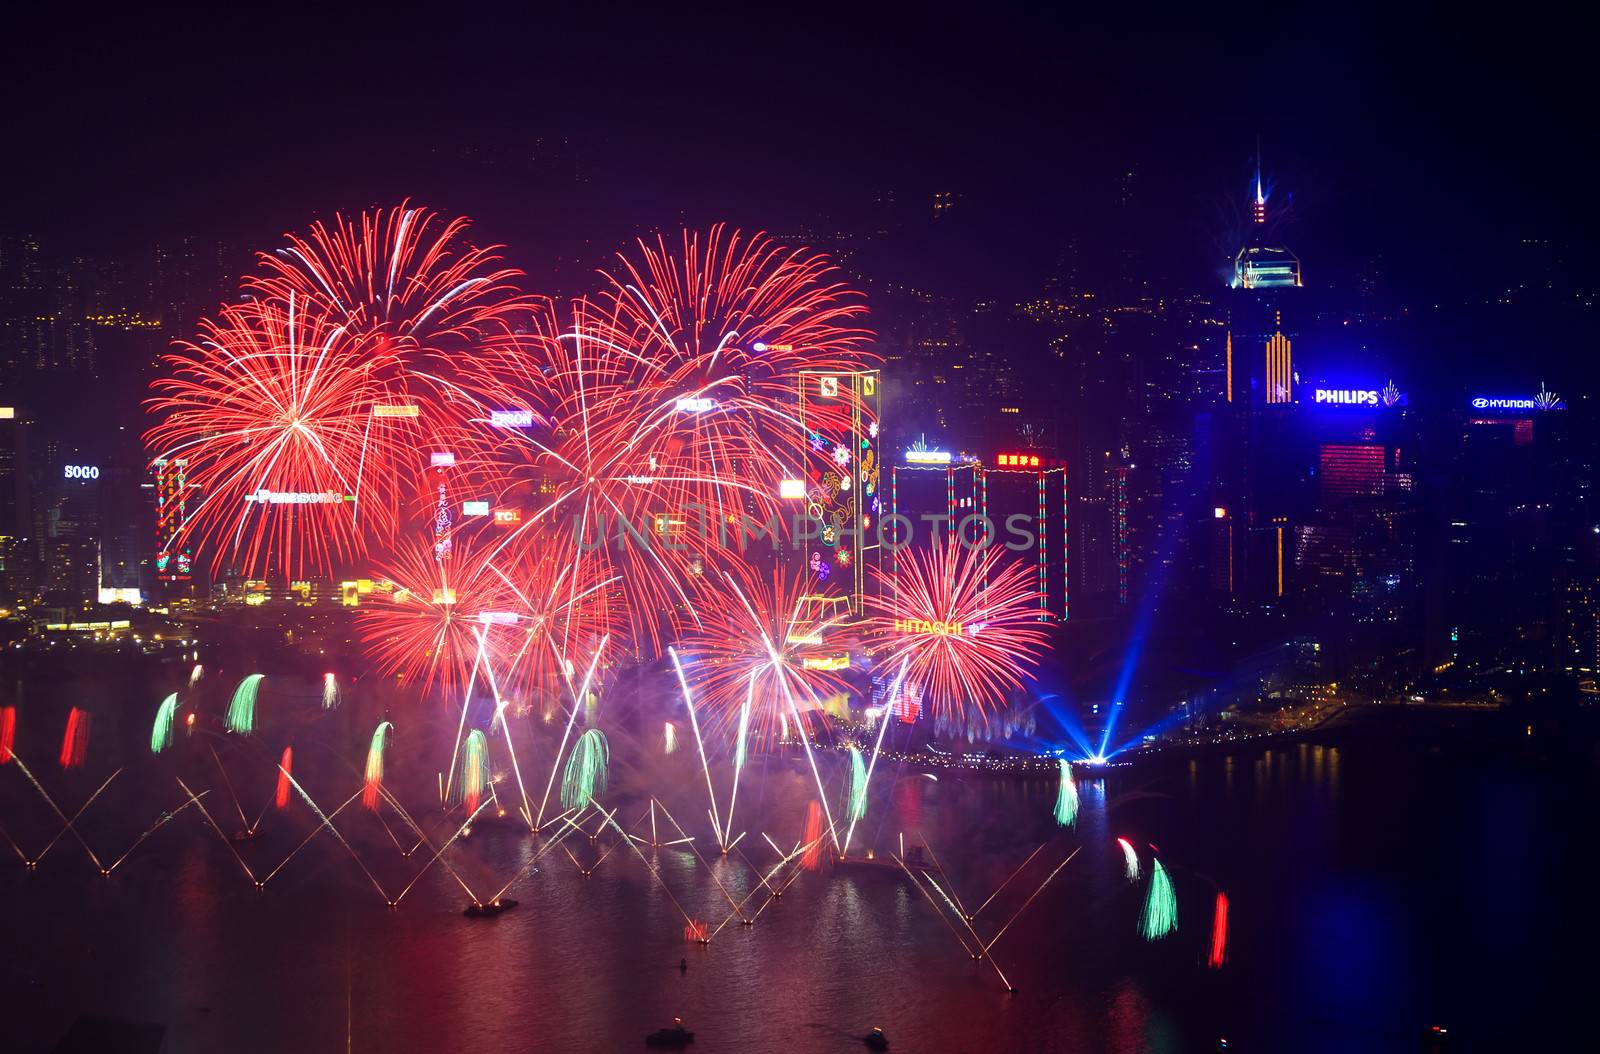 Hong Kong fireworks 2014 by kawing921